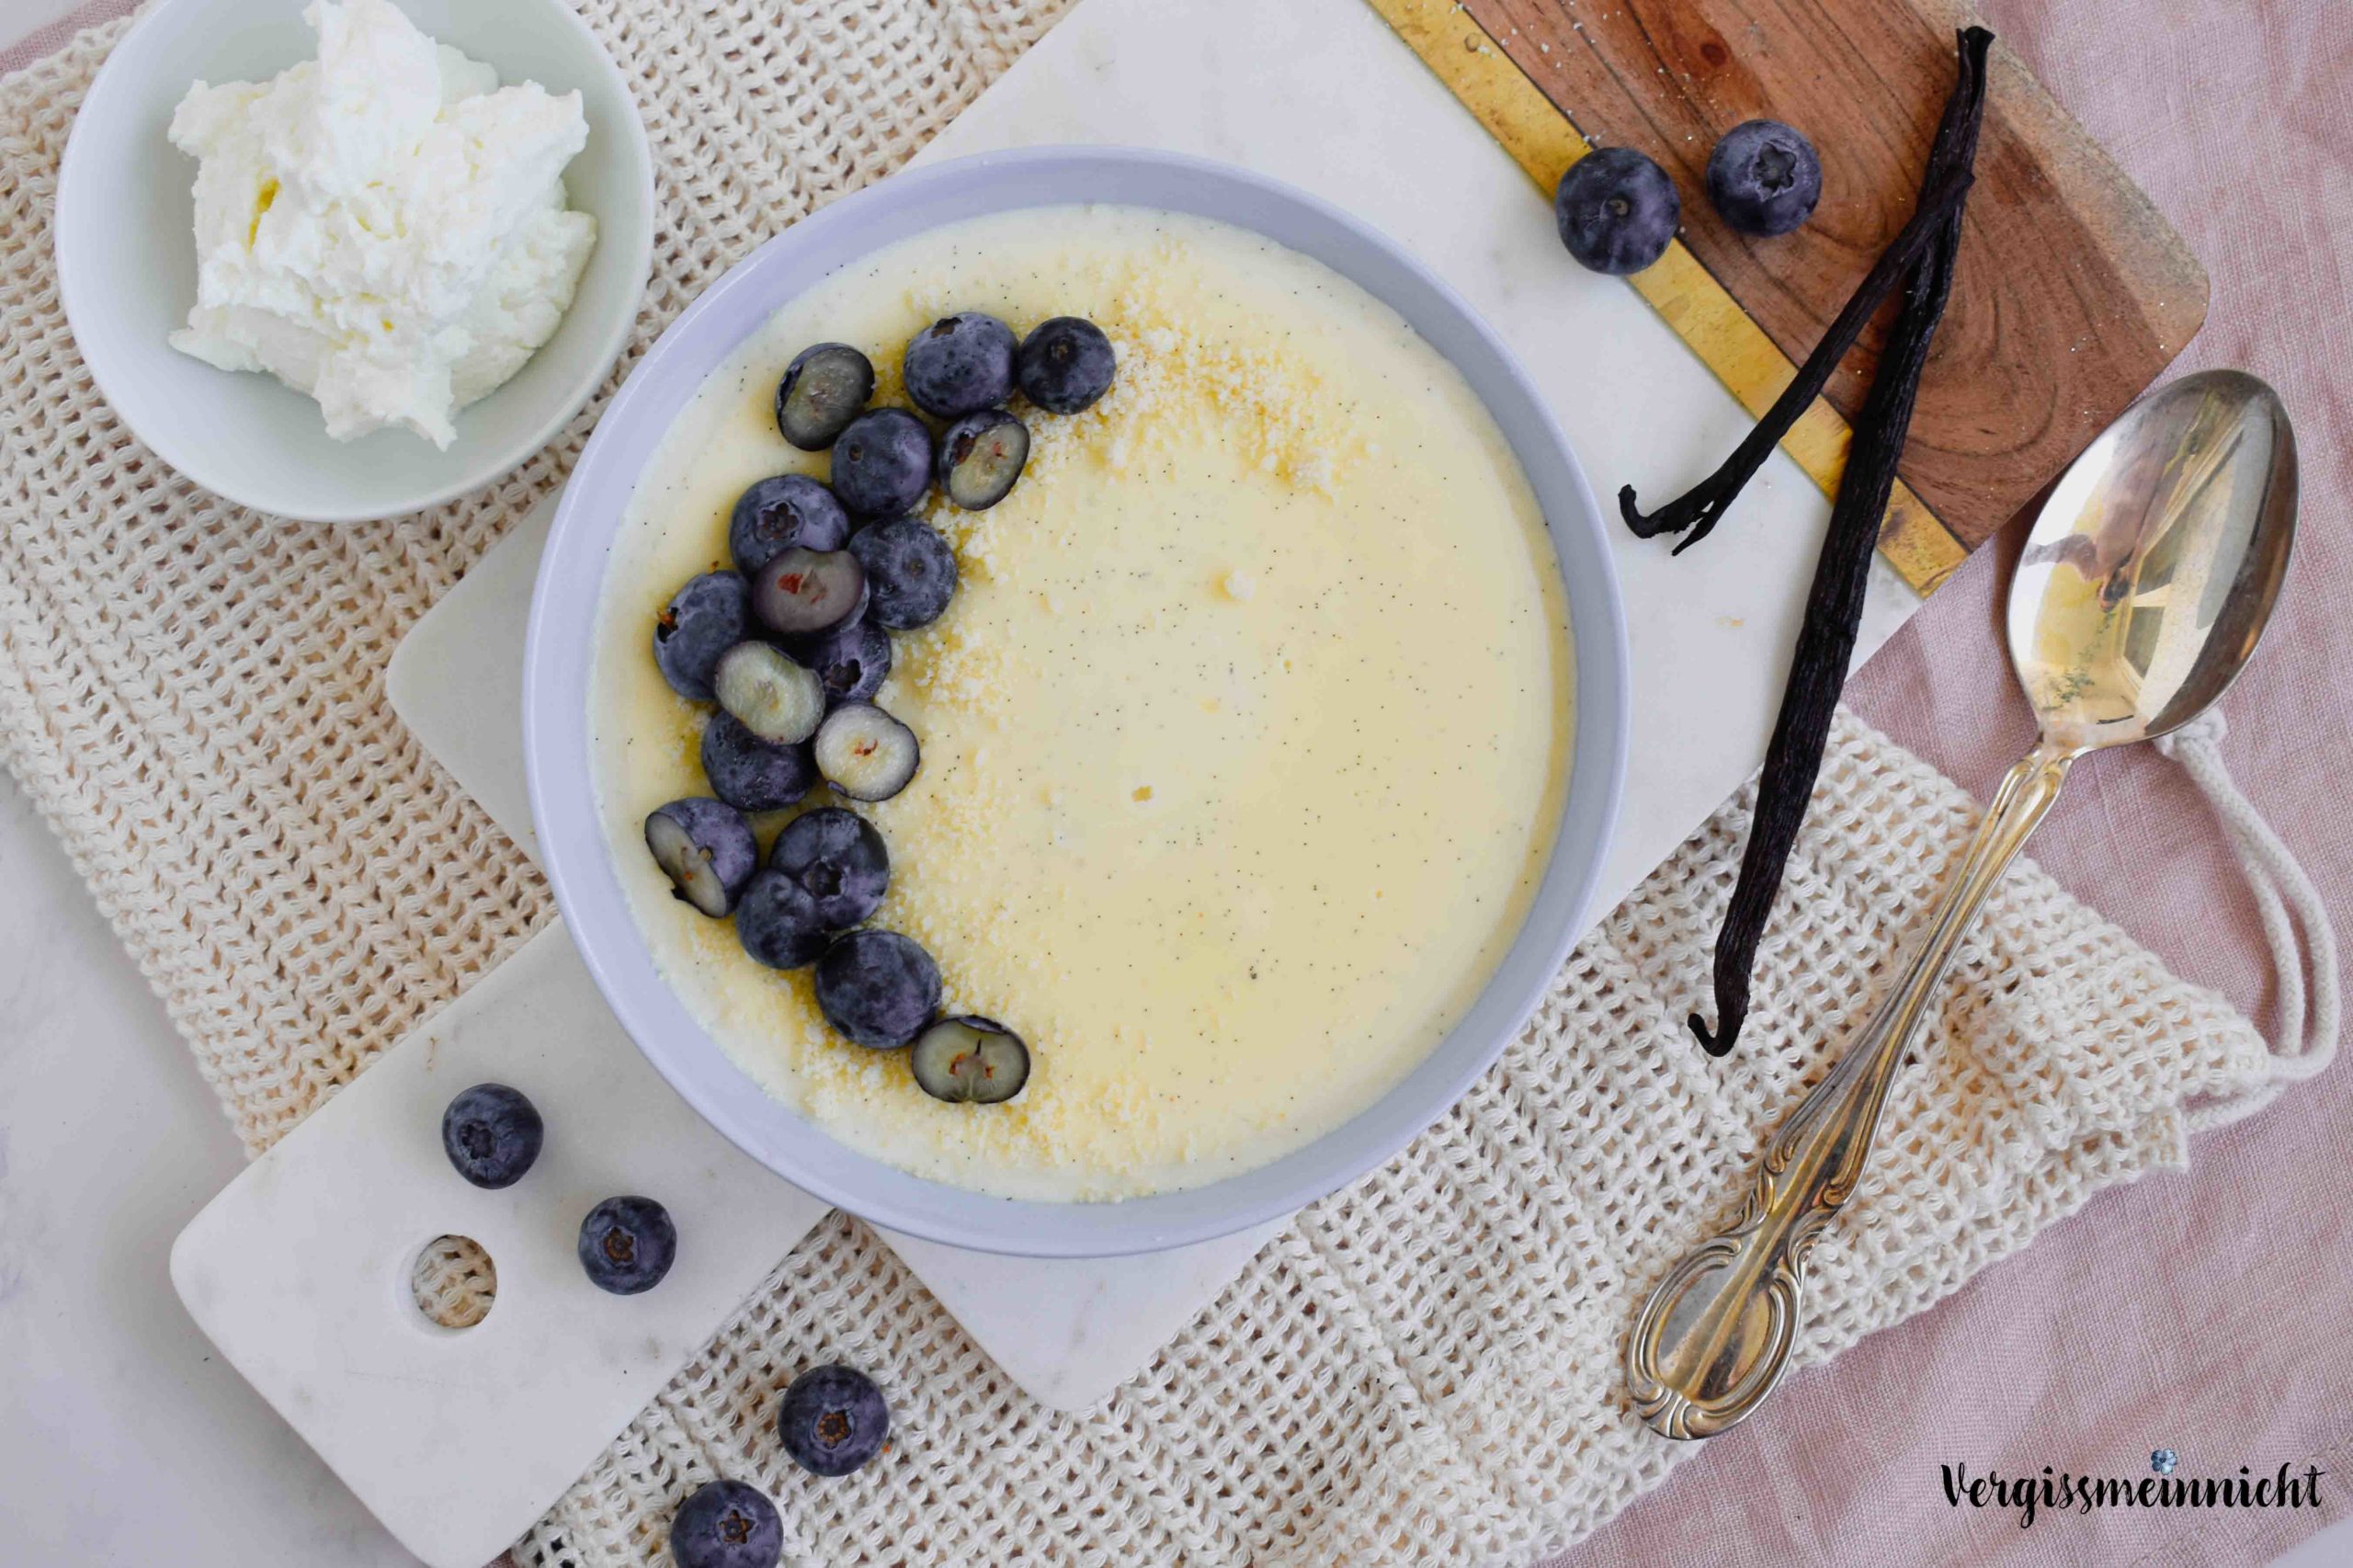 Vanille-Quark-Pudding mit Mandeln und Blaubeeren - Vergissmeinnnicht